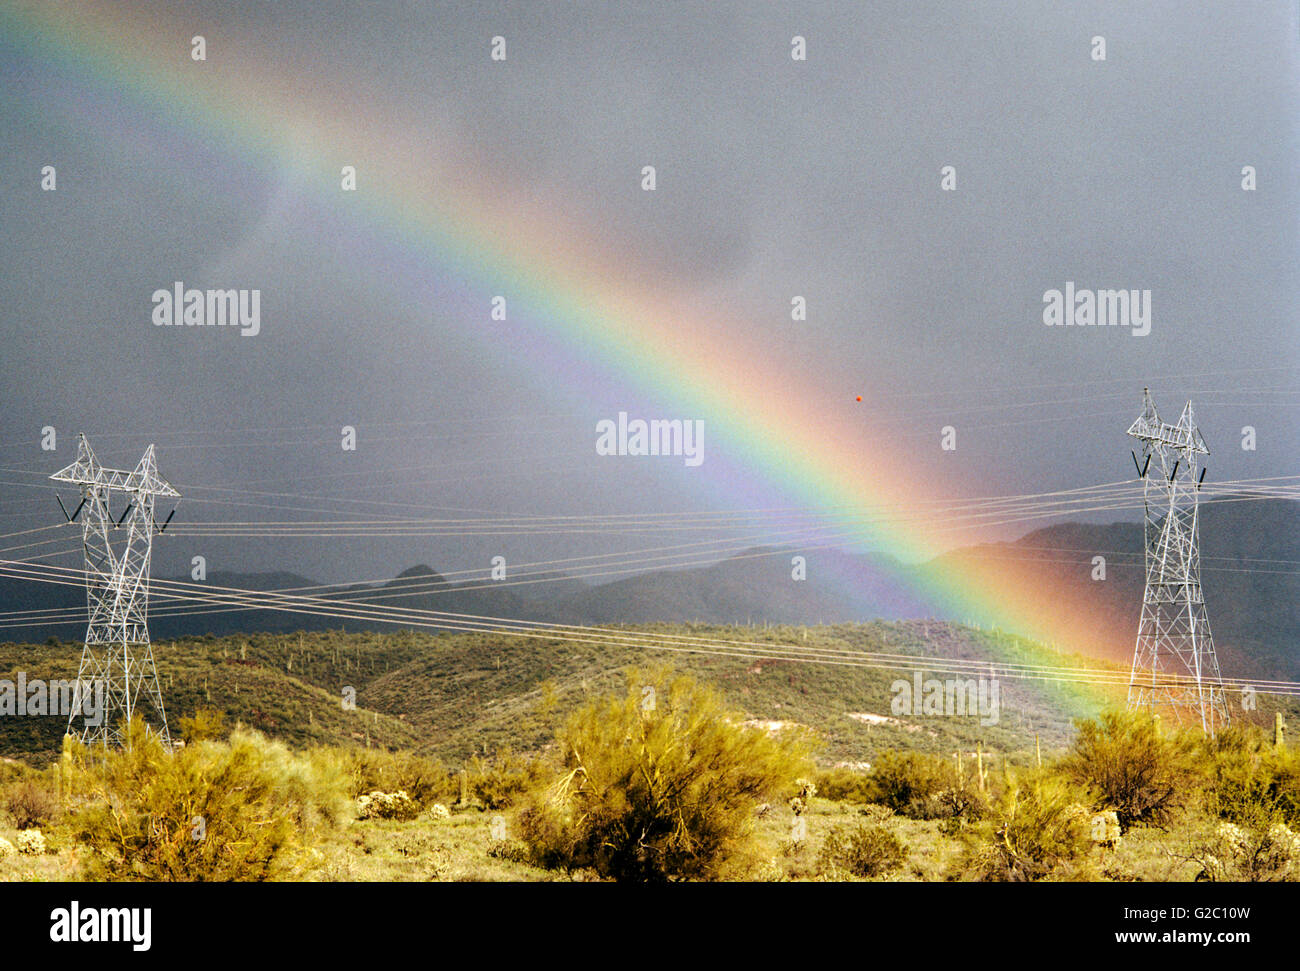 Hochspannungsleitungen und Türme mit einem lebendigen, dramatische Regenbogen in der Wüste nördlich von Phoenix, Arizona, USA Stockfoto